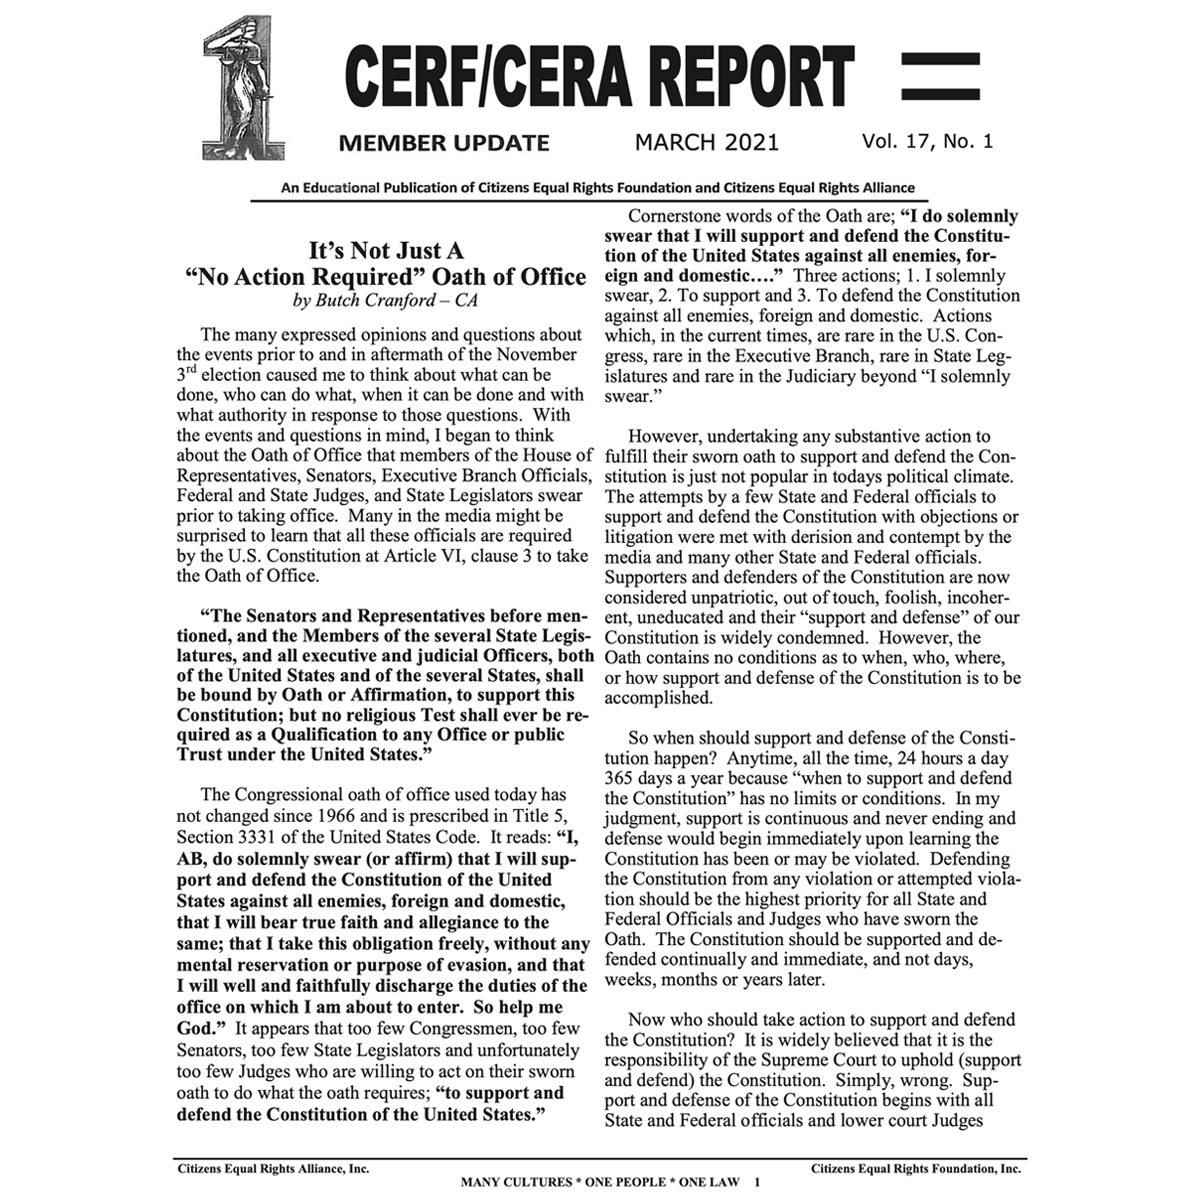 CERA CERF UPDATES NEWSLETTER